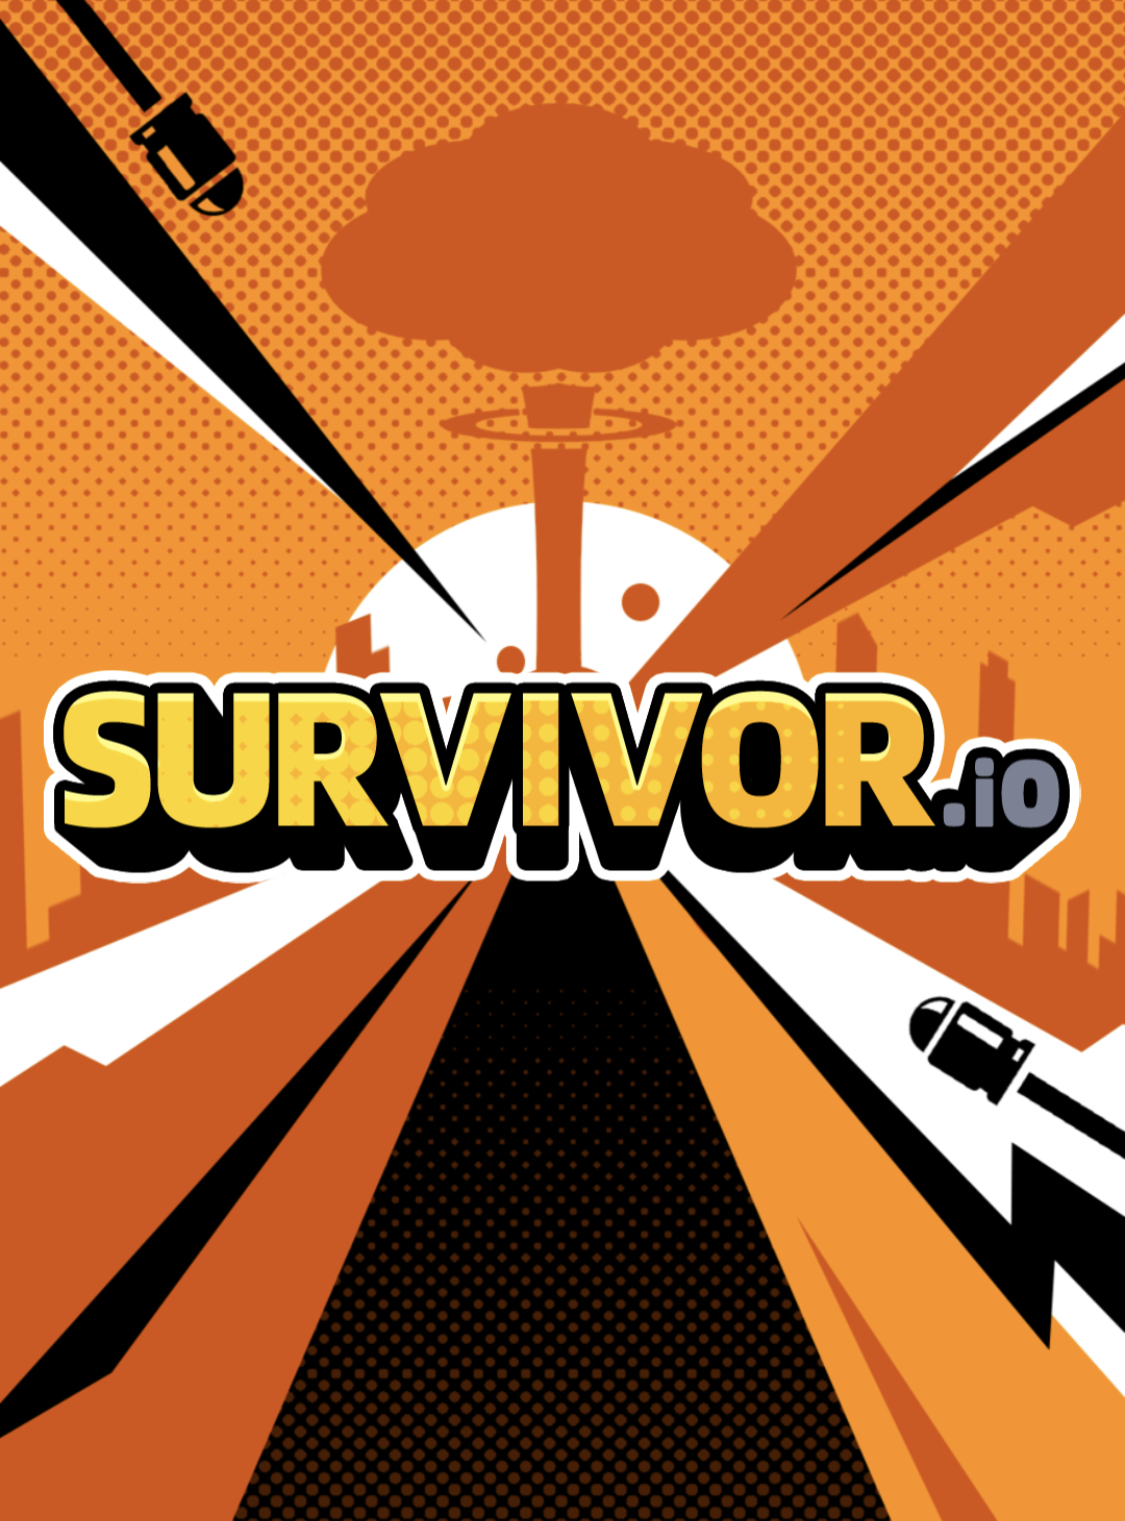 Survivor.io Haven Promo Code #habby #survivorio #promo #promocode